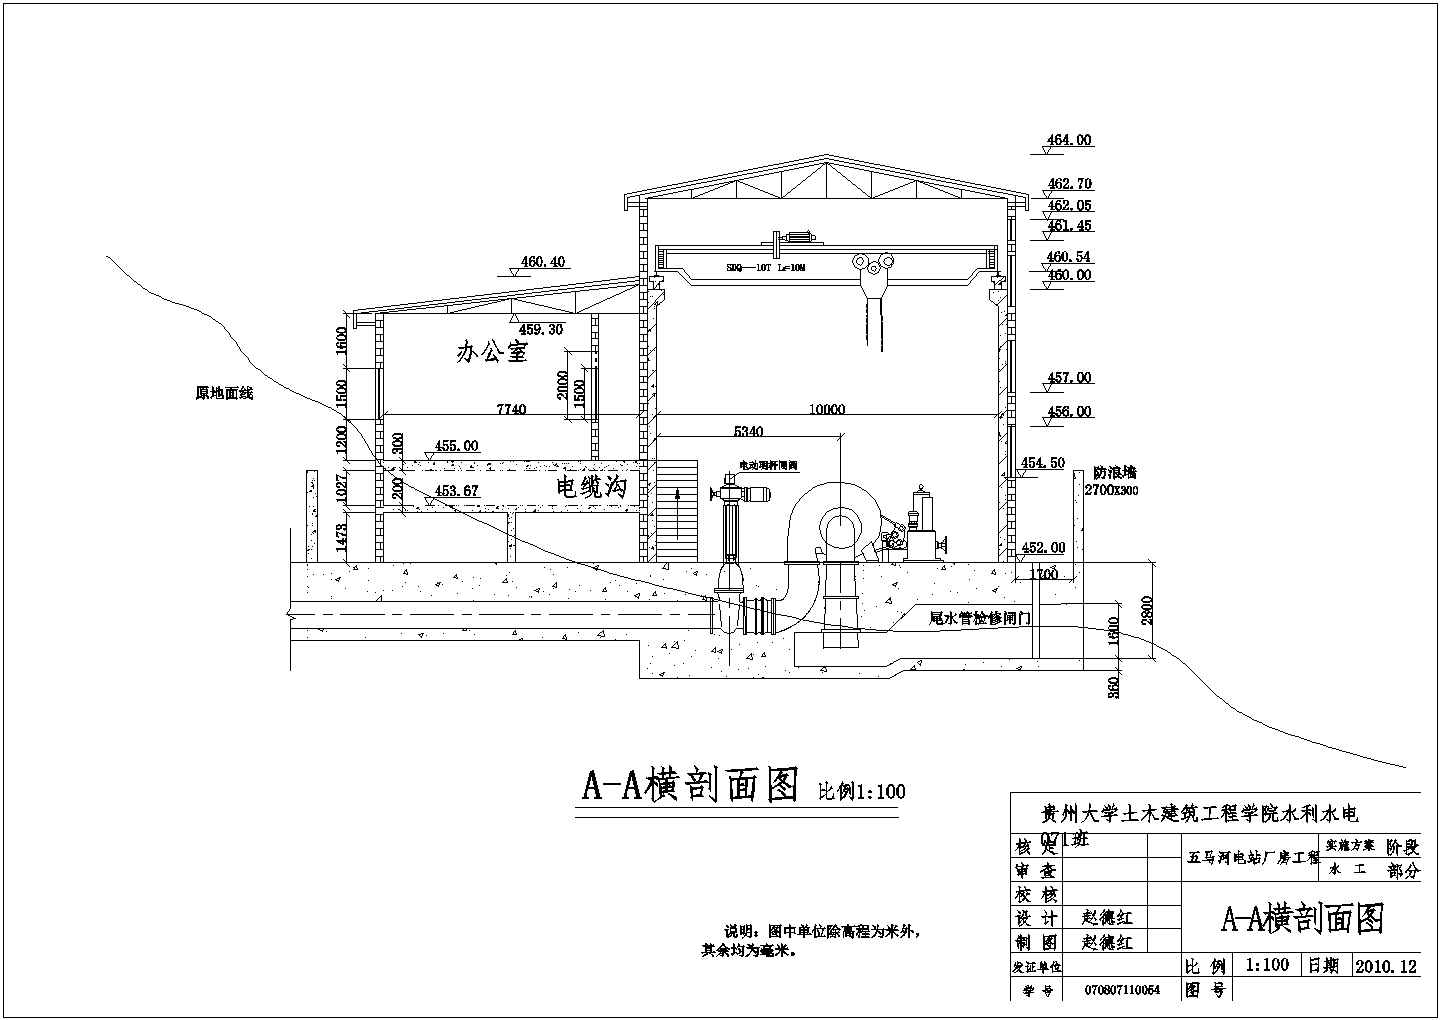 【贵州】大学五马河电站厂房工程水电站课程设计图纸